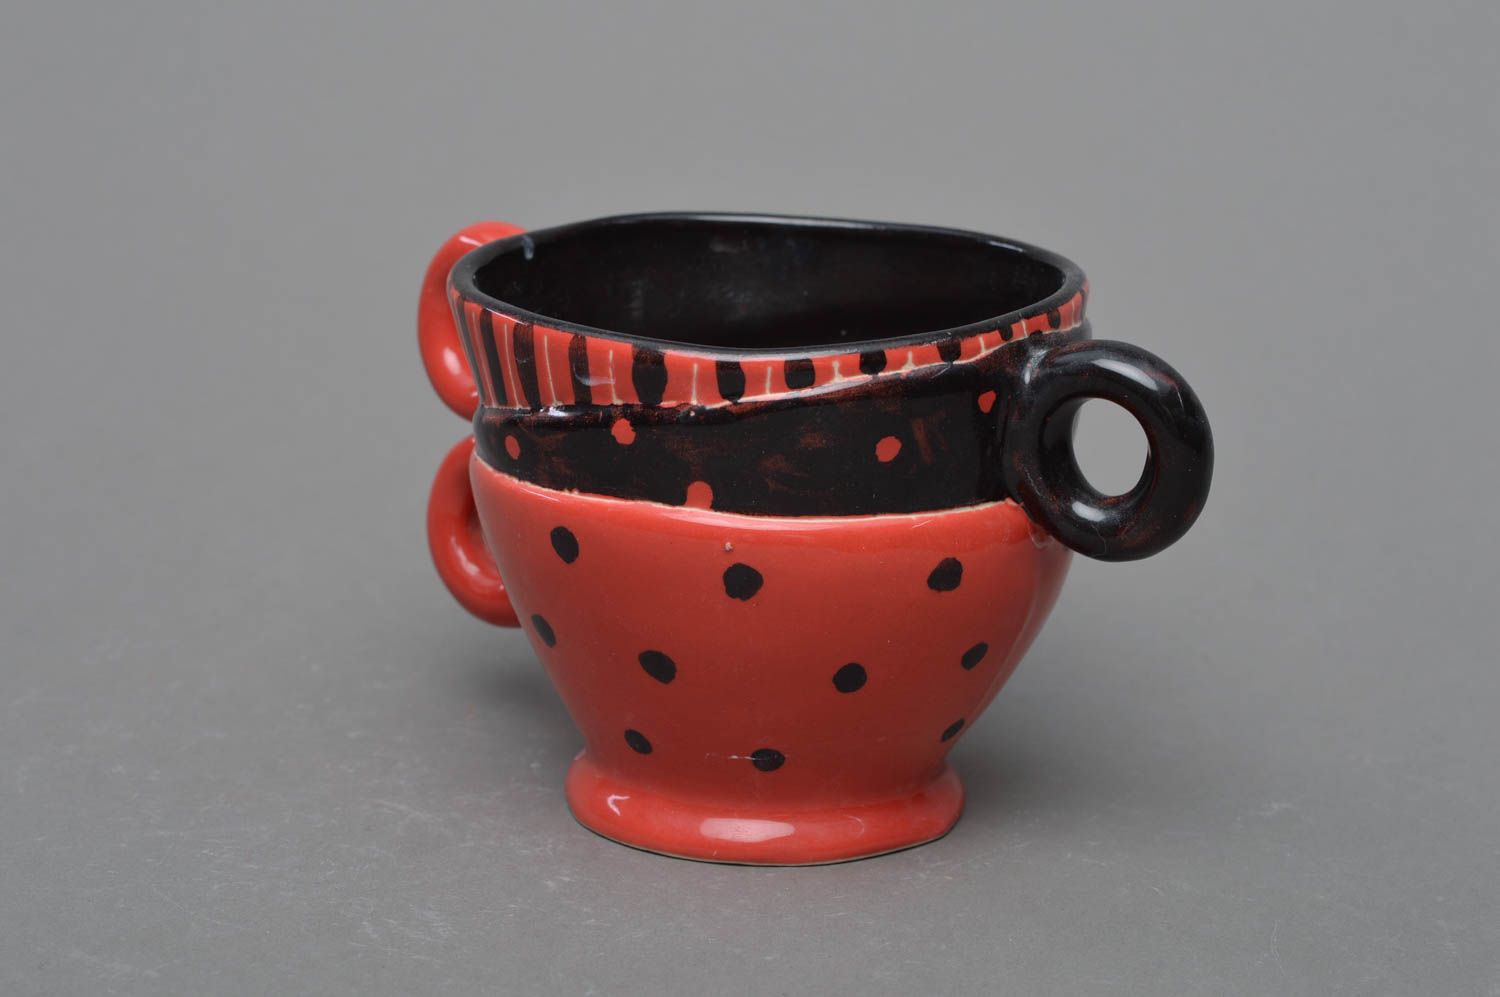 Schöne kreative handmade Tasse aus Porzellan ungewöhnlicher Form rot schwarz foto 2